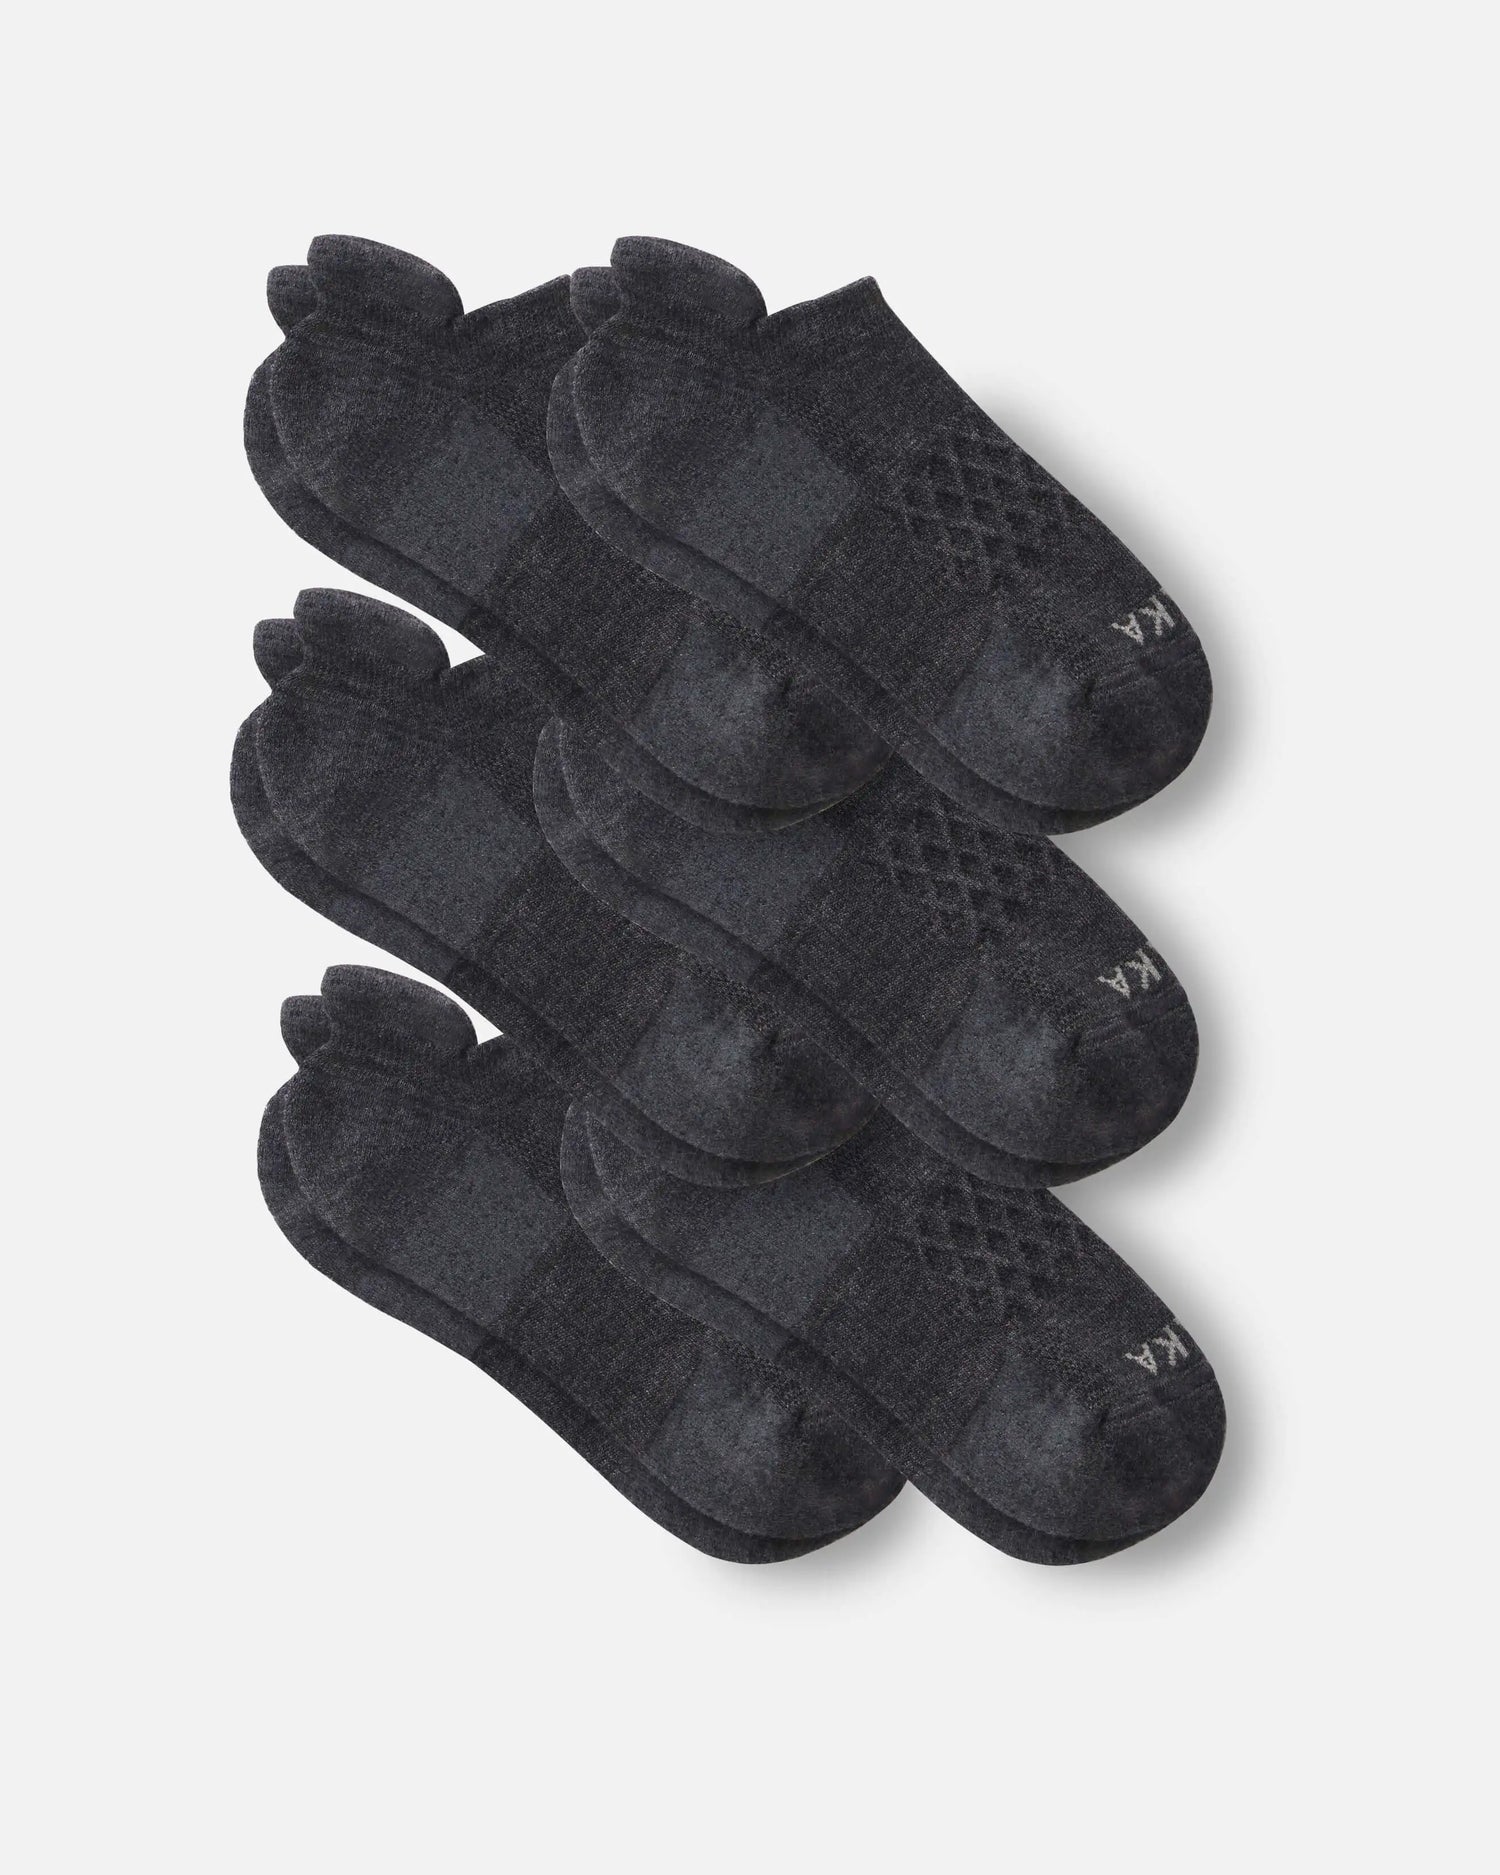 6 pairs of dark grey alpaca wool ankle socks